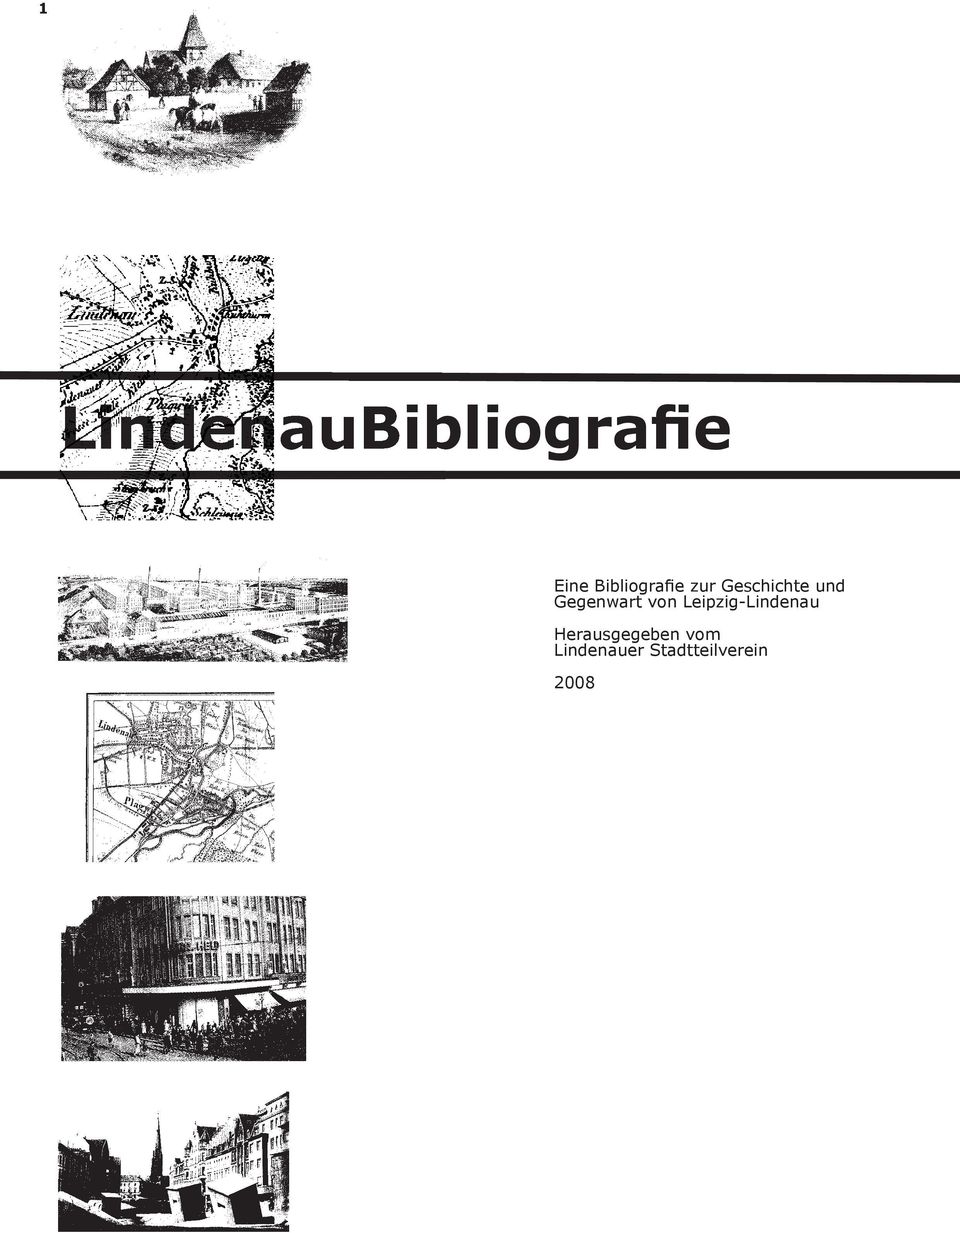 Gegenwart von Leipzig-Lindenau